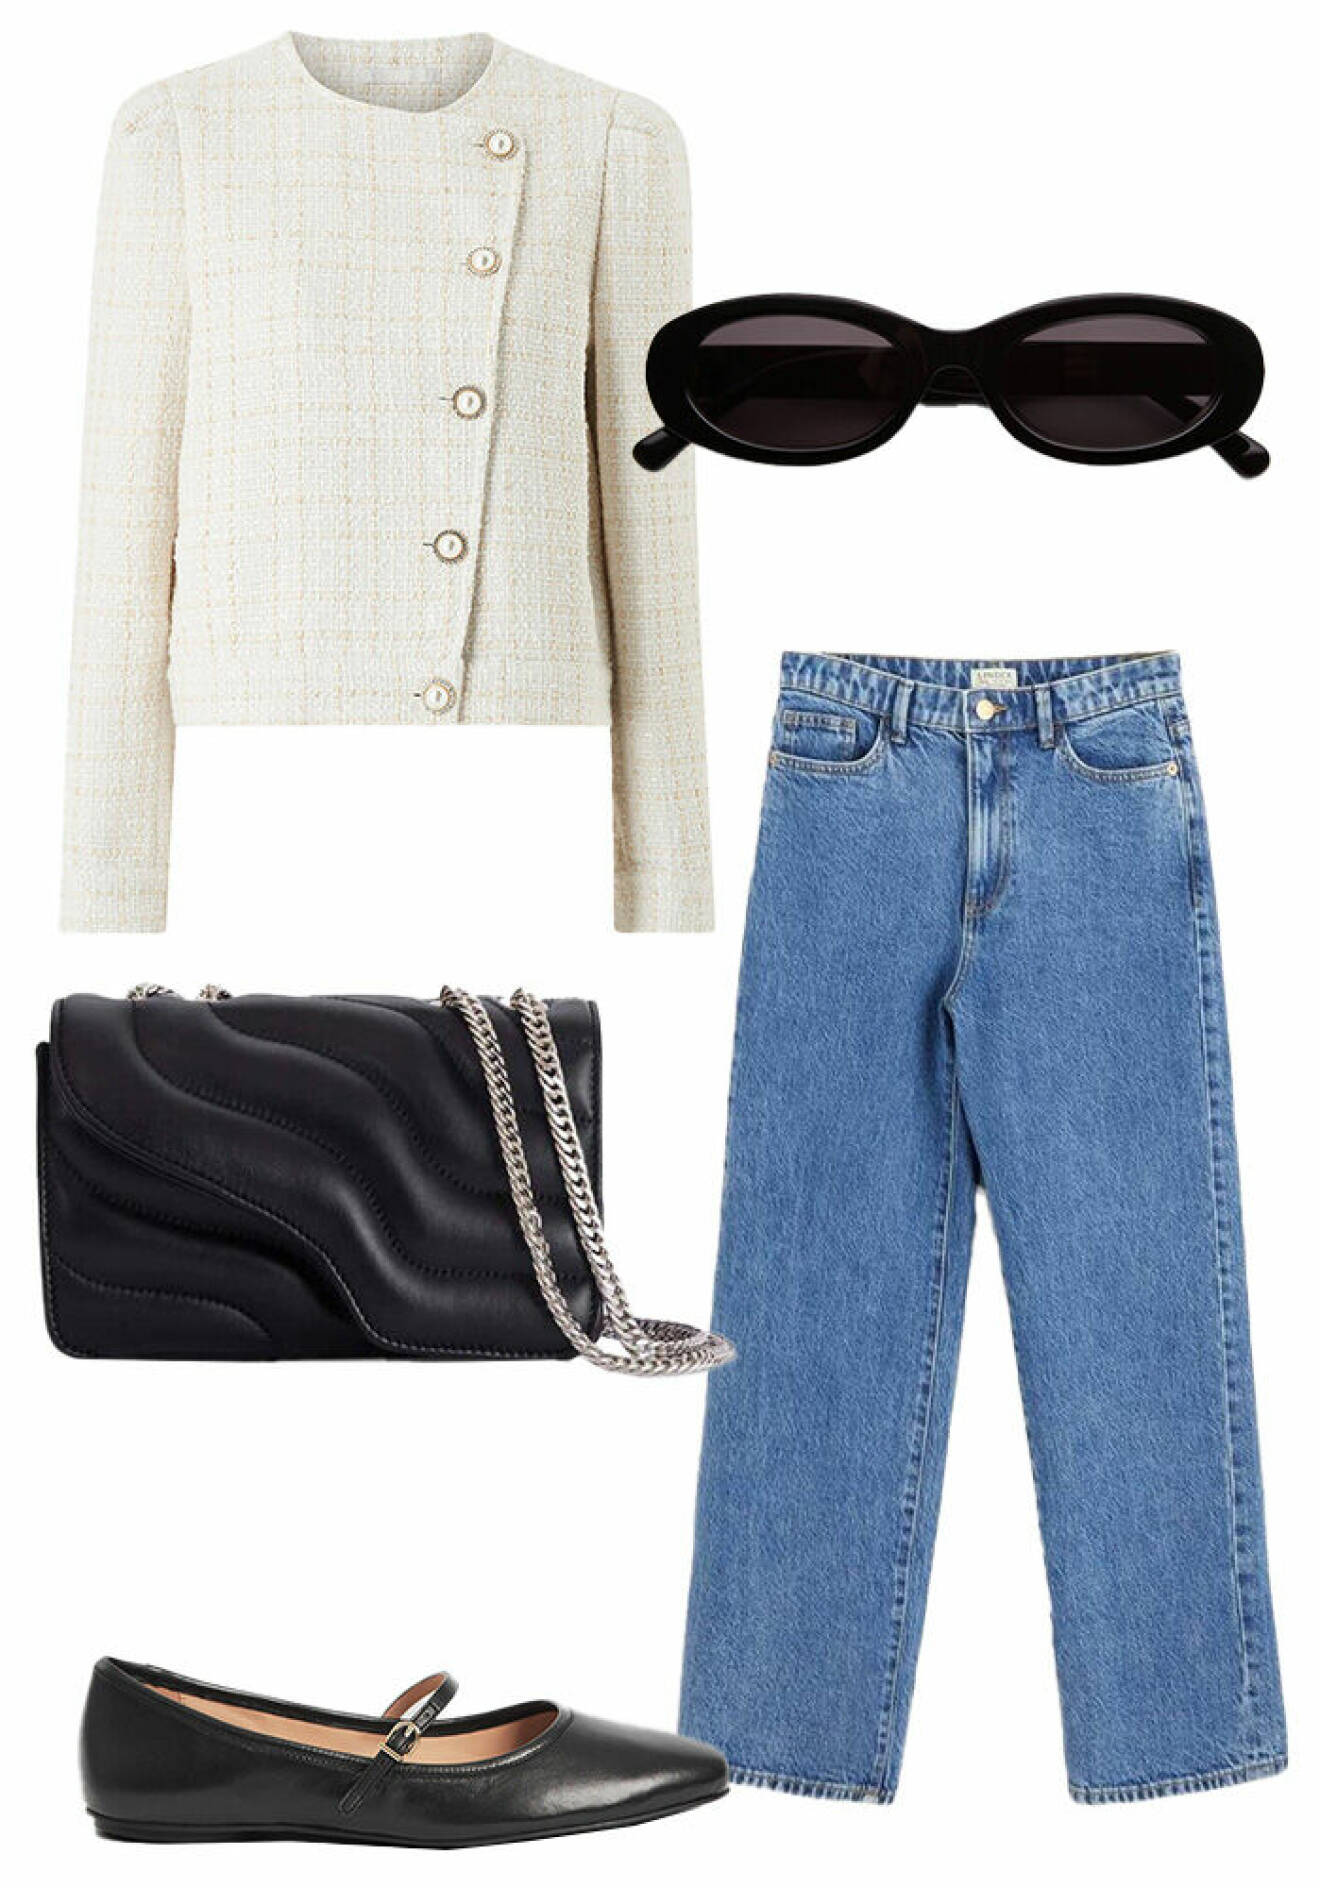 Franskinspirerad outfit till kontoret på sommaren med vit boucléjacka, raka jeans, svarta mary janes, svart väska och smala solglasögon